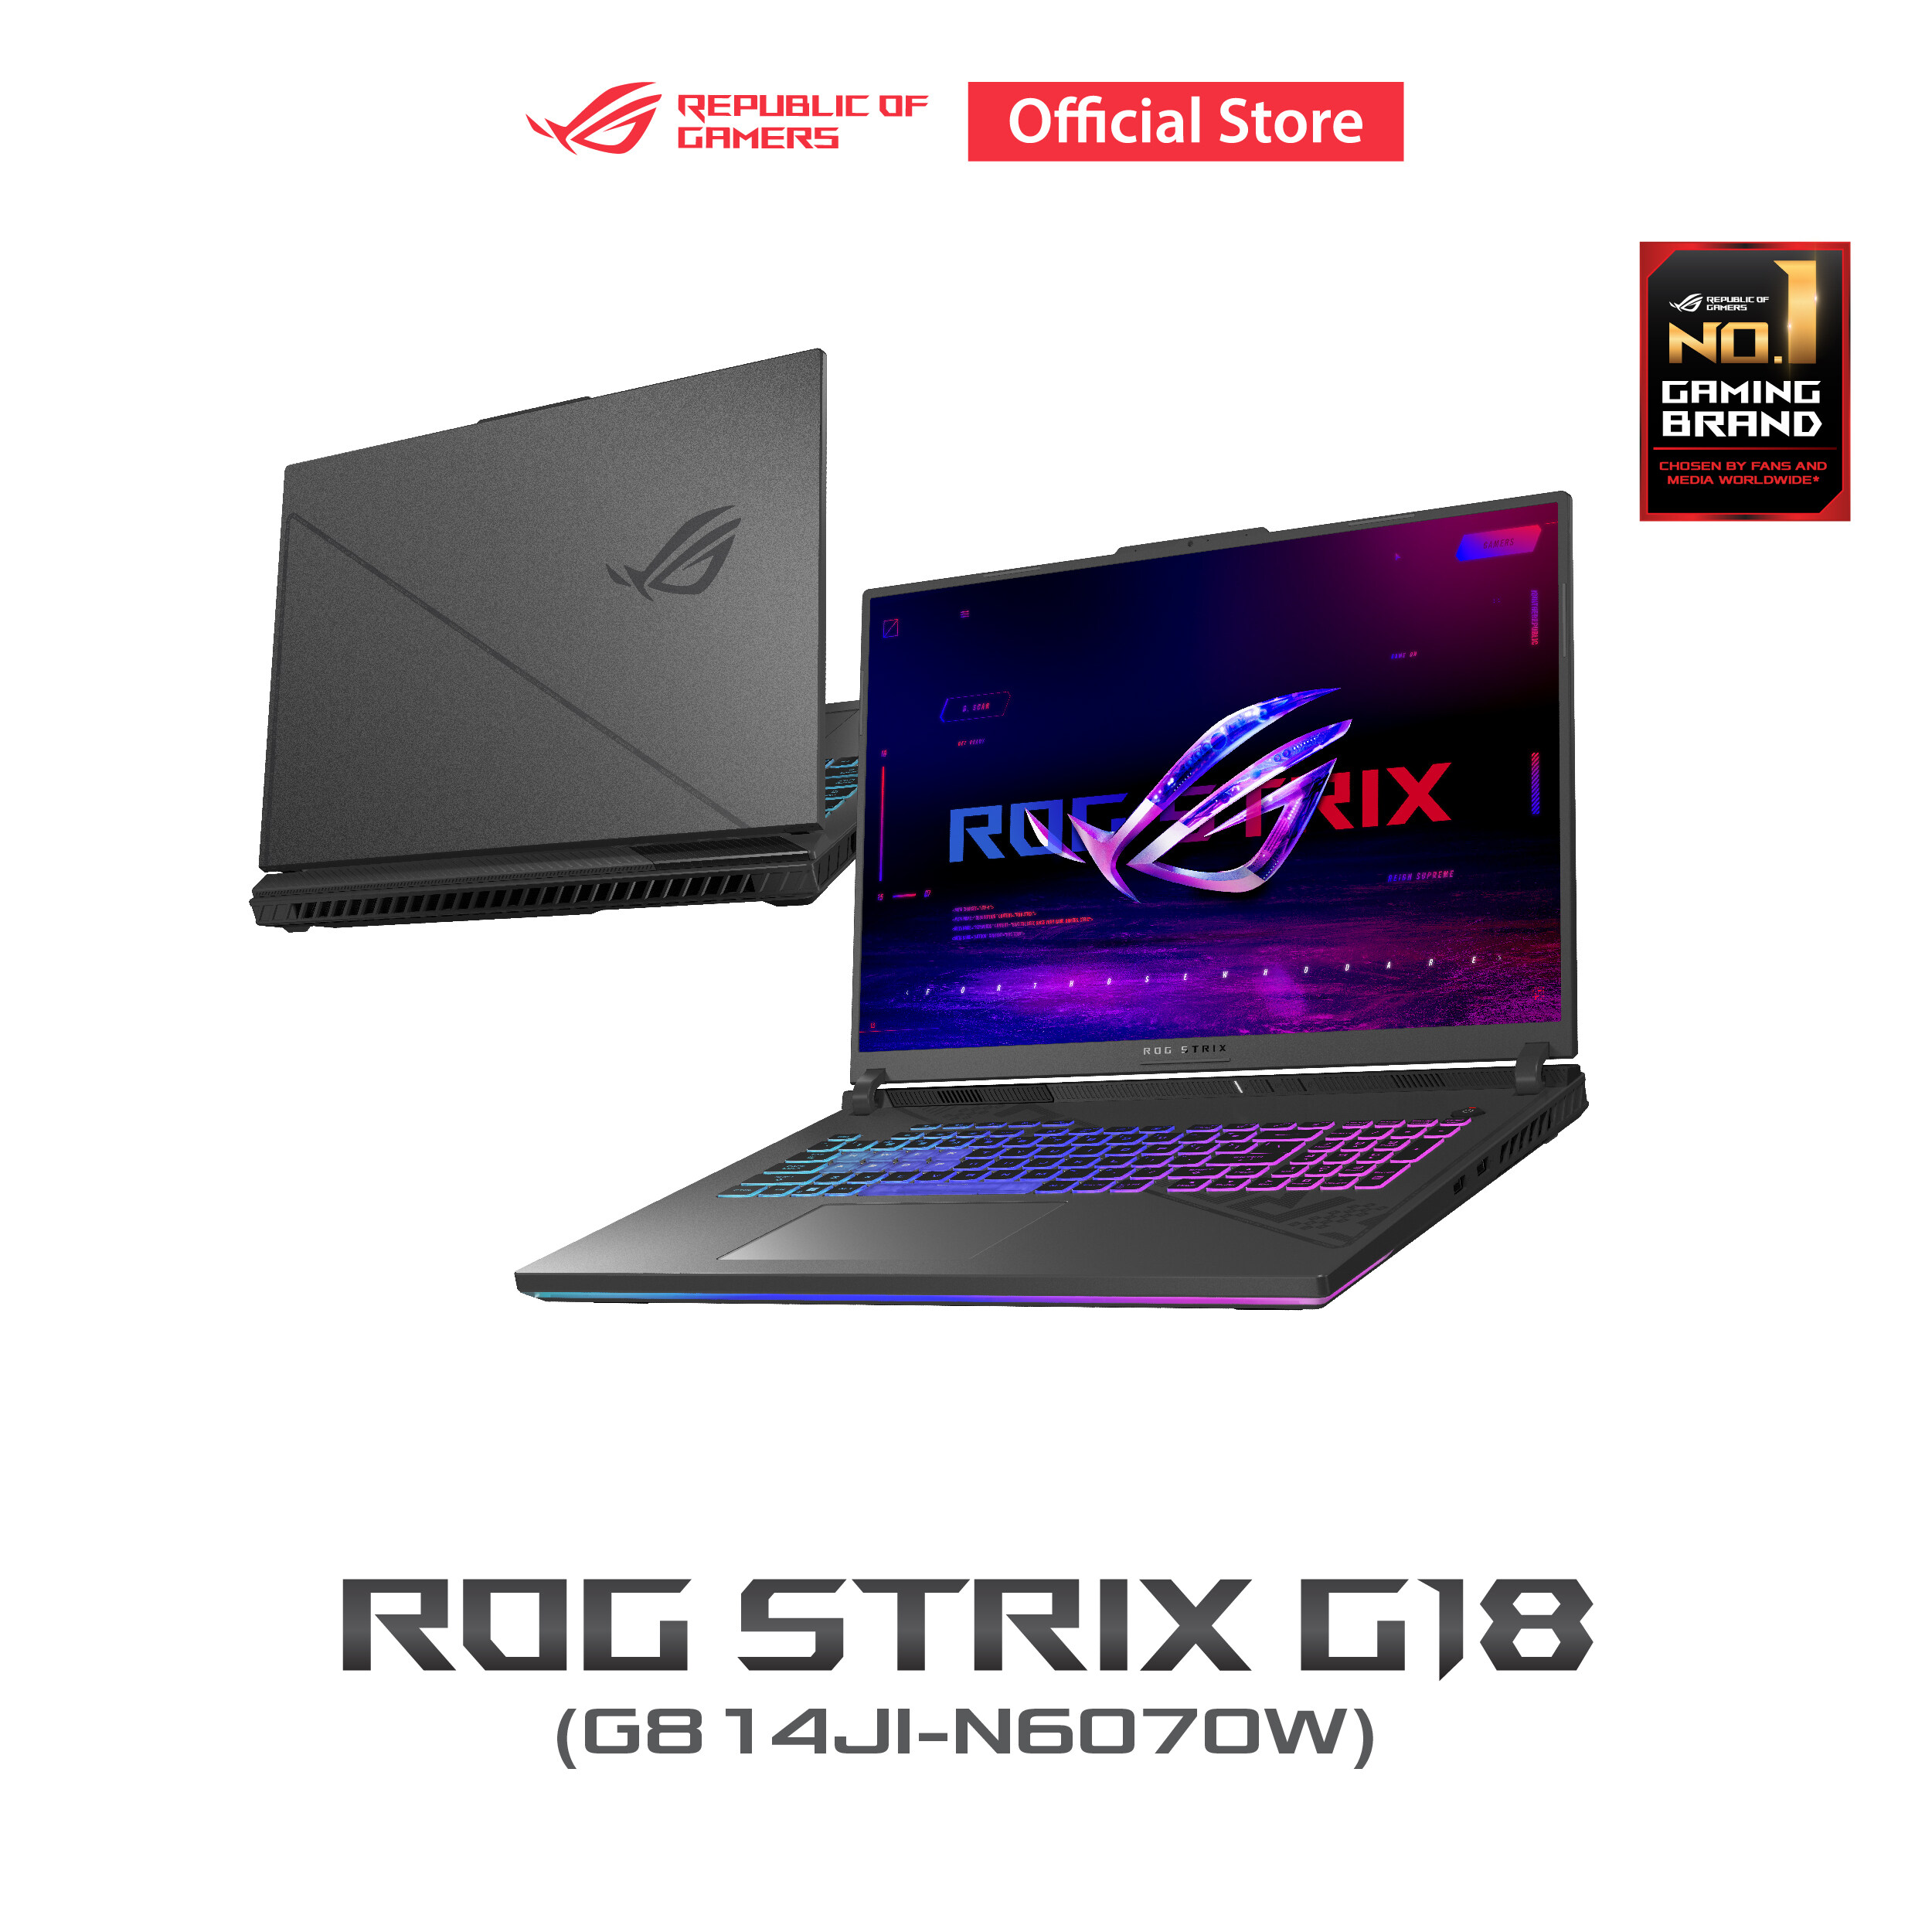 ASUS ROG Strix G18 gaming laptop 18", 240Hz QHD+ IPS